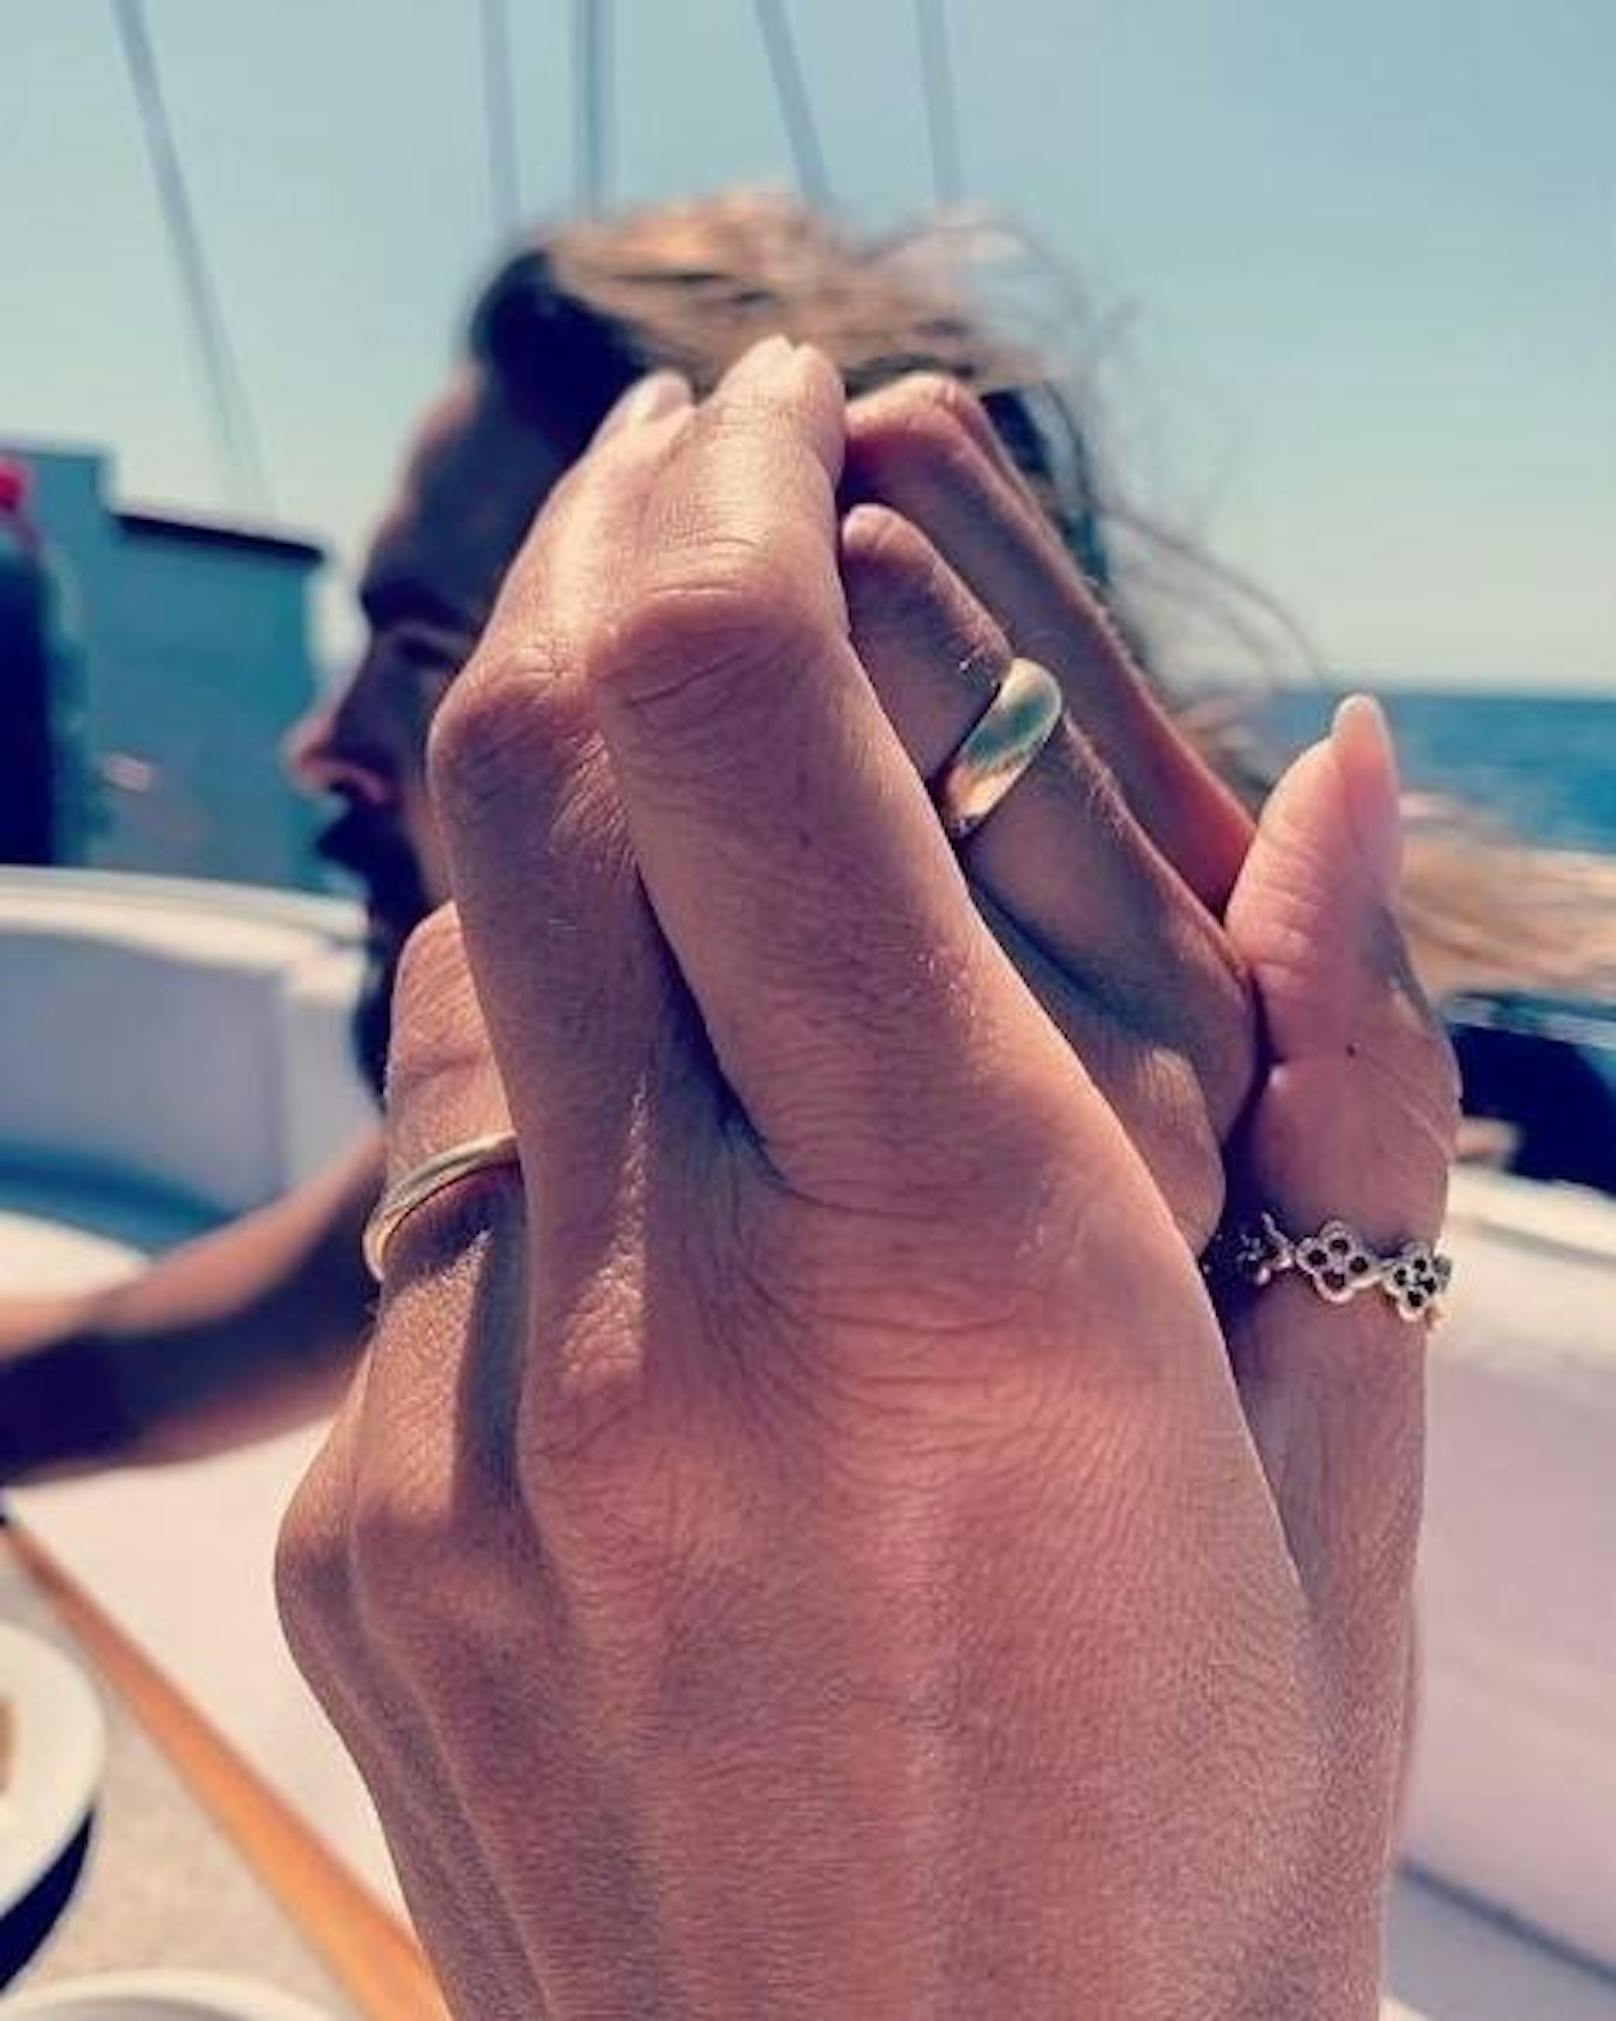 16.08.2019: Heidi Klum und Tom Kaulitz präsentieren einige Tage nach ihrer Vermählung vor Capri nun auf Instagram die Eheringe, mit denen sie optisch die von ihnen eingegangene Bindung präsentieren.